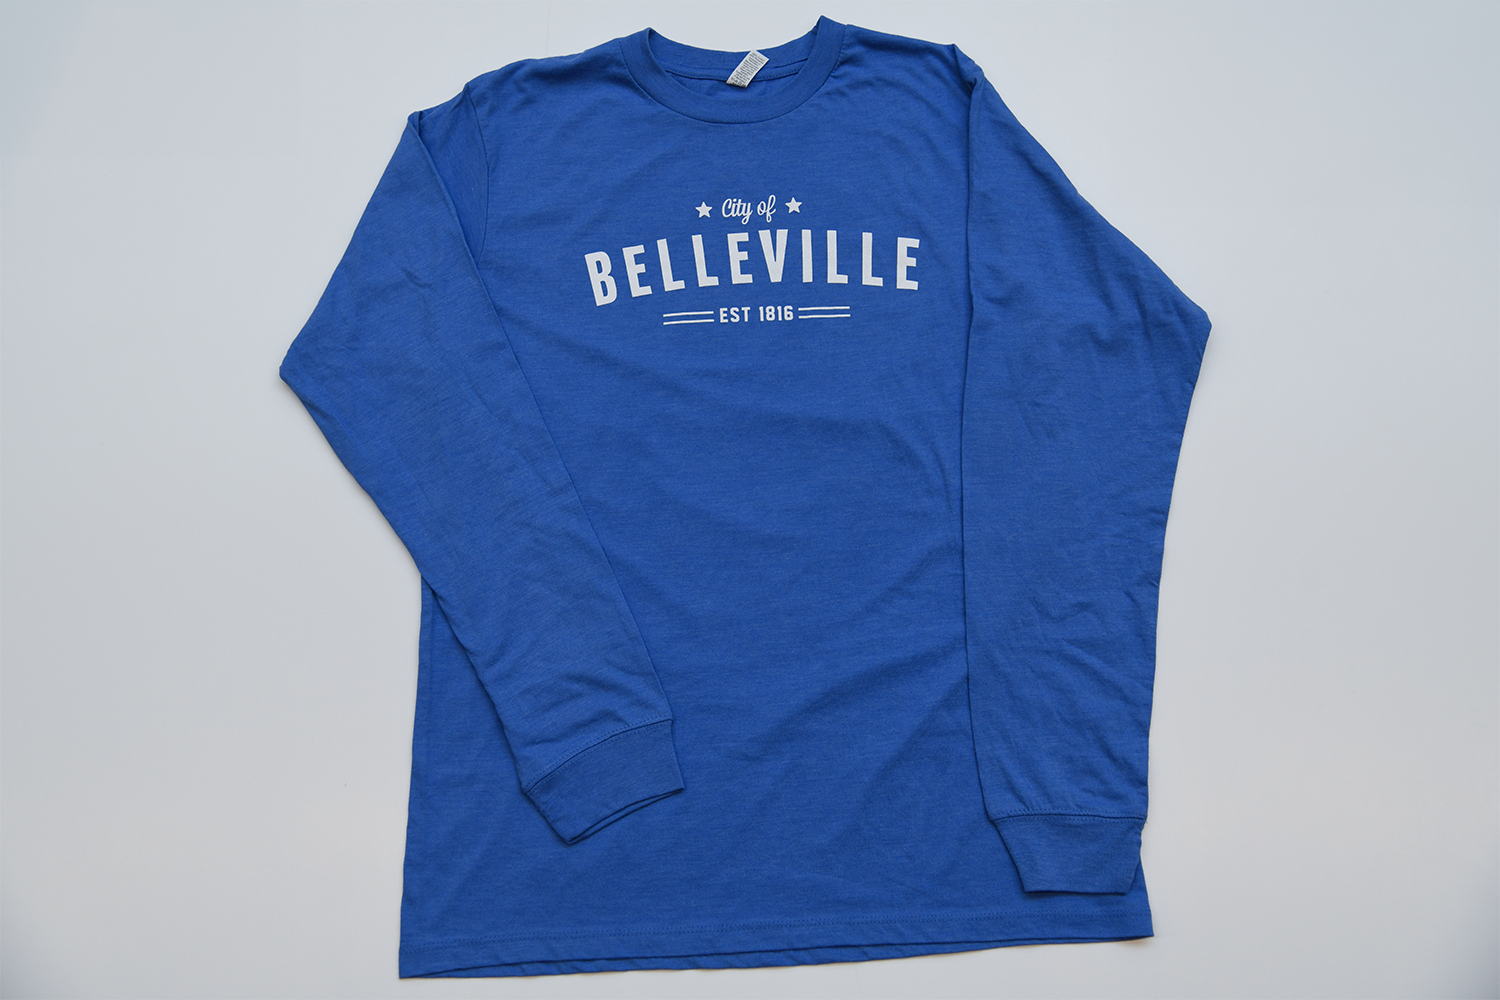 Blue long-sleeve City of Belleville t-shirt.